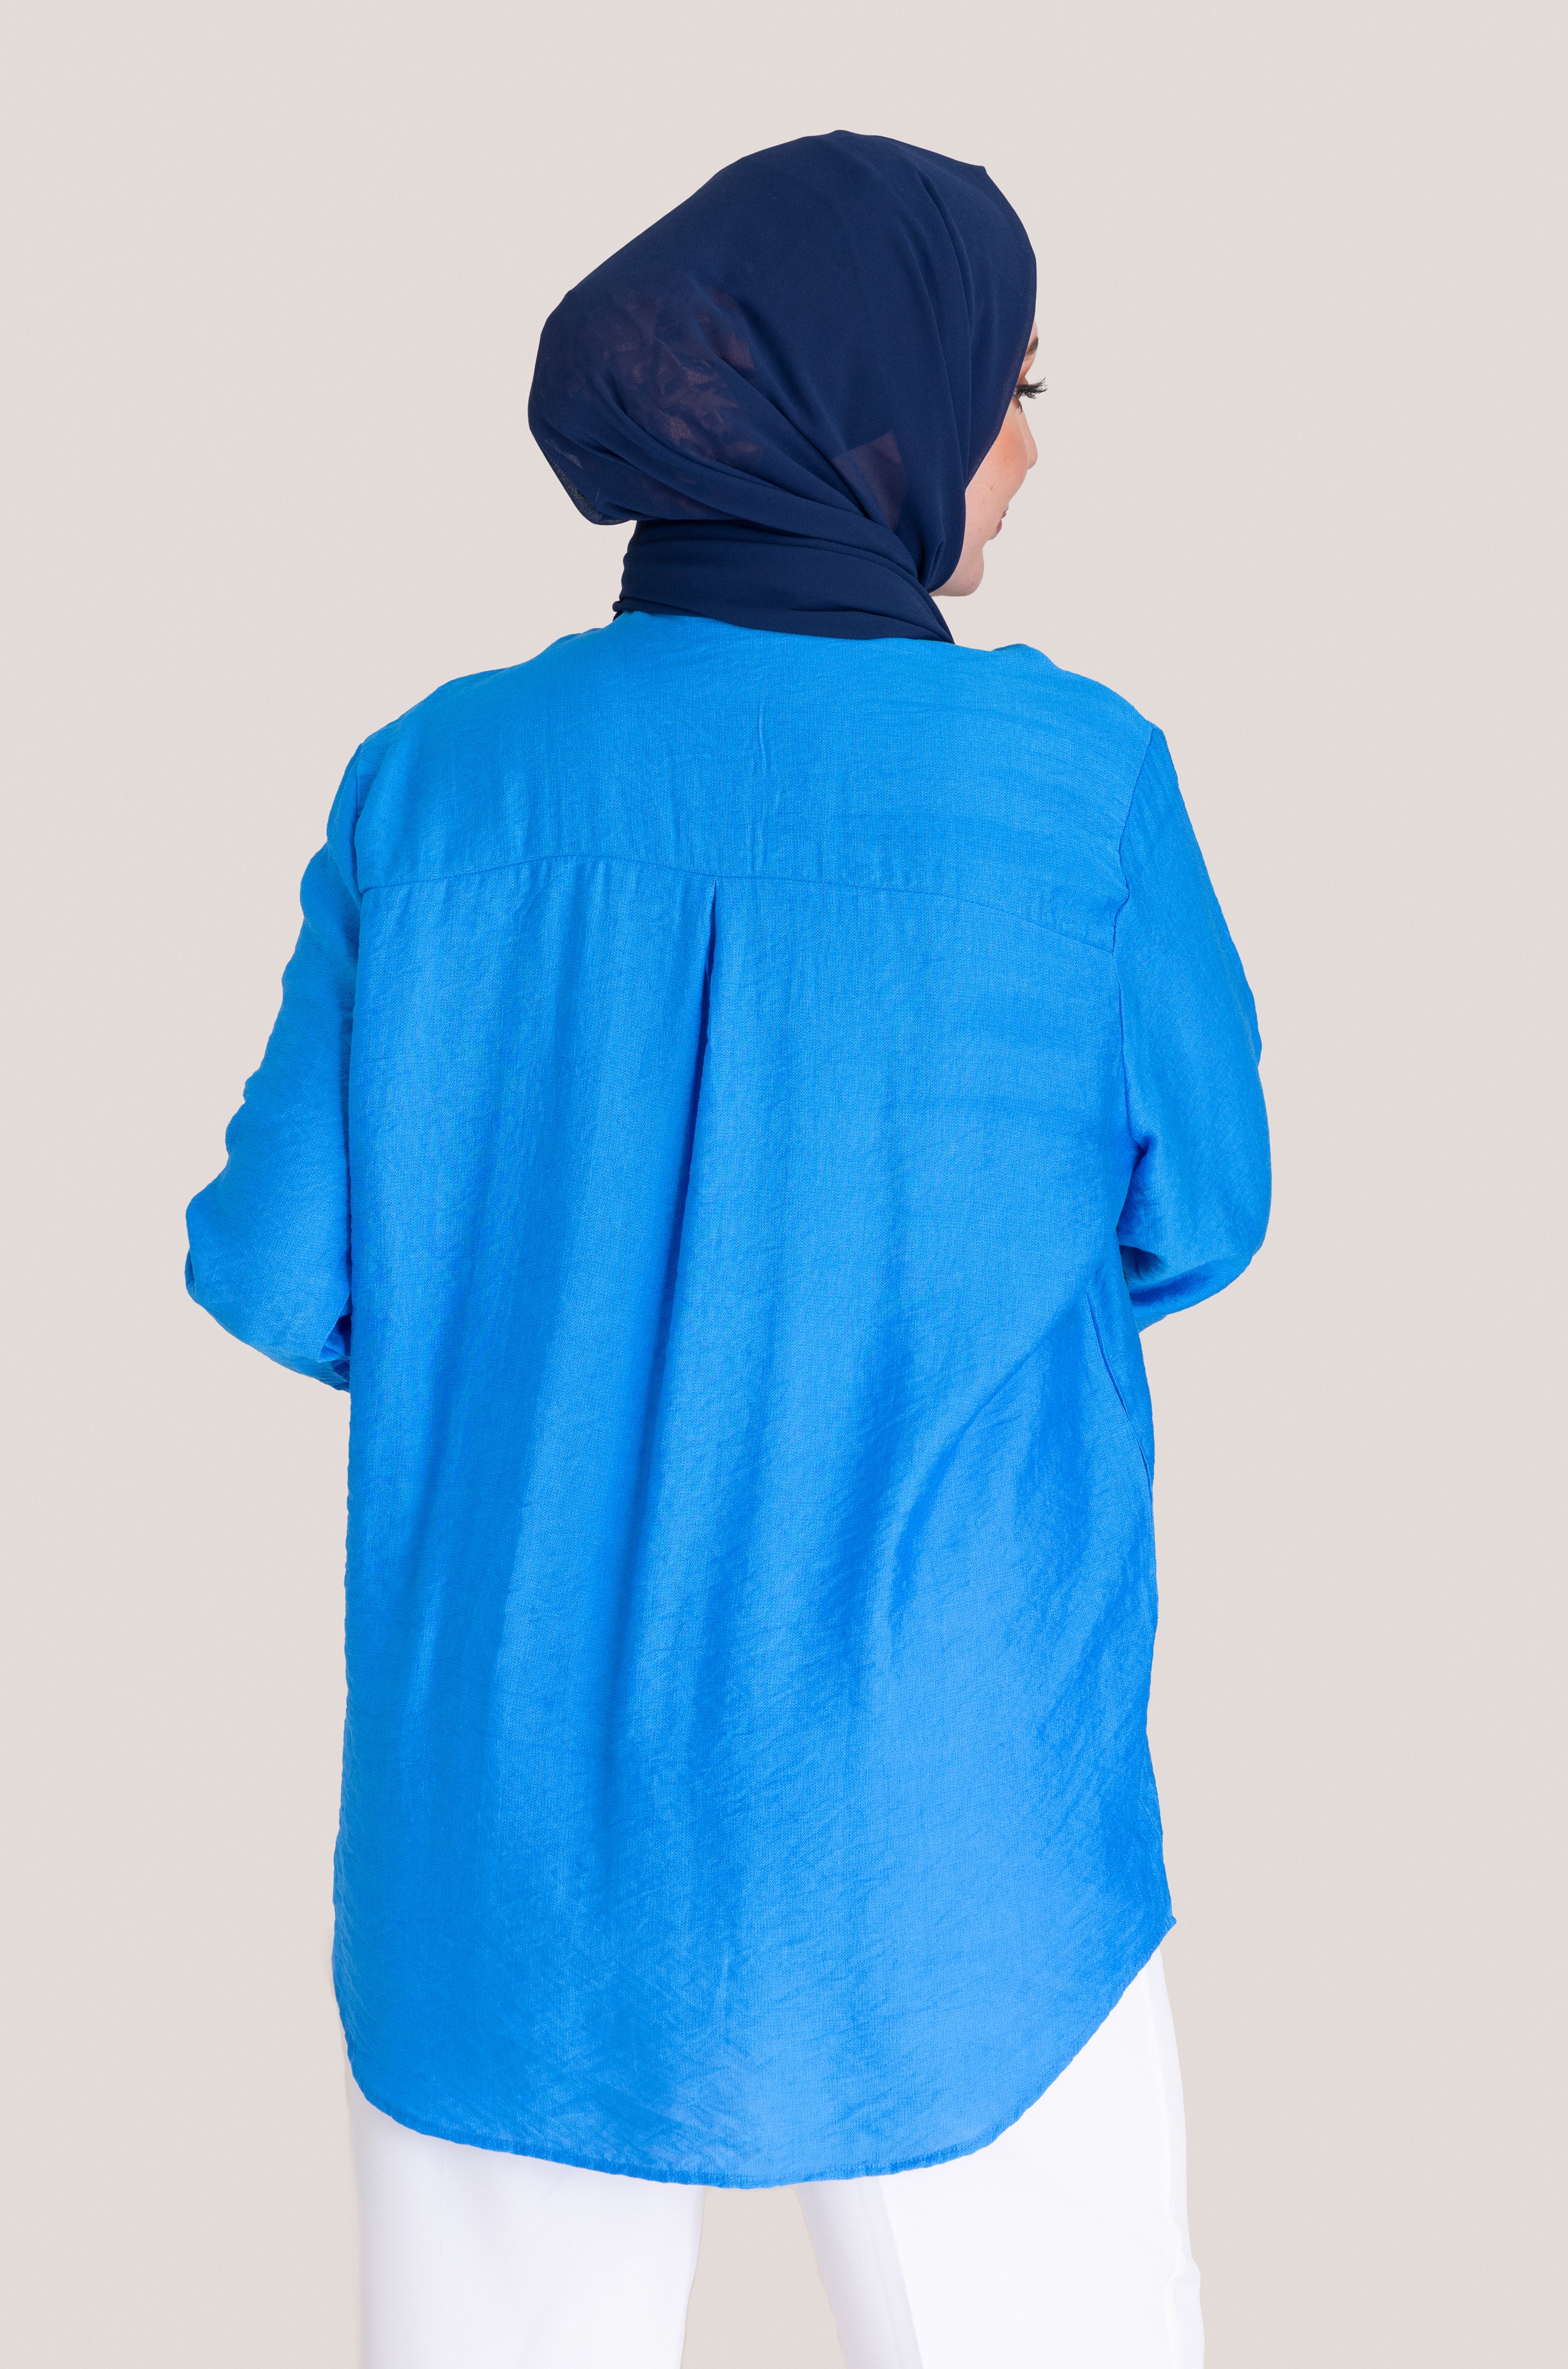 Embellished Patterned Loose Fit Top - Blue